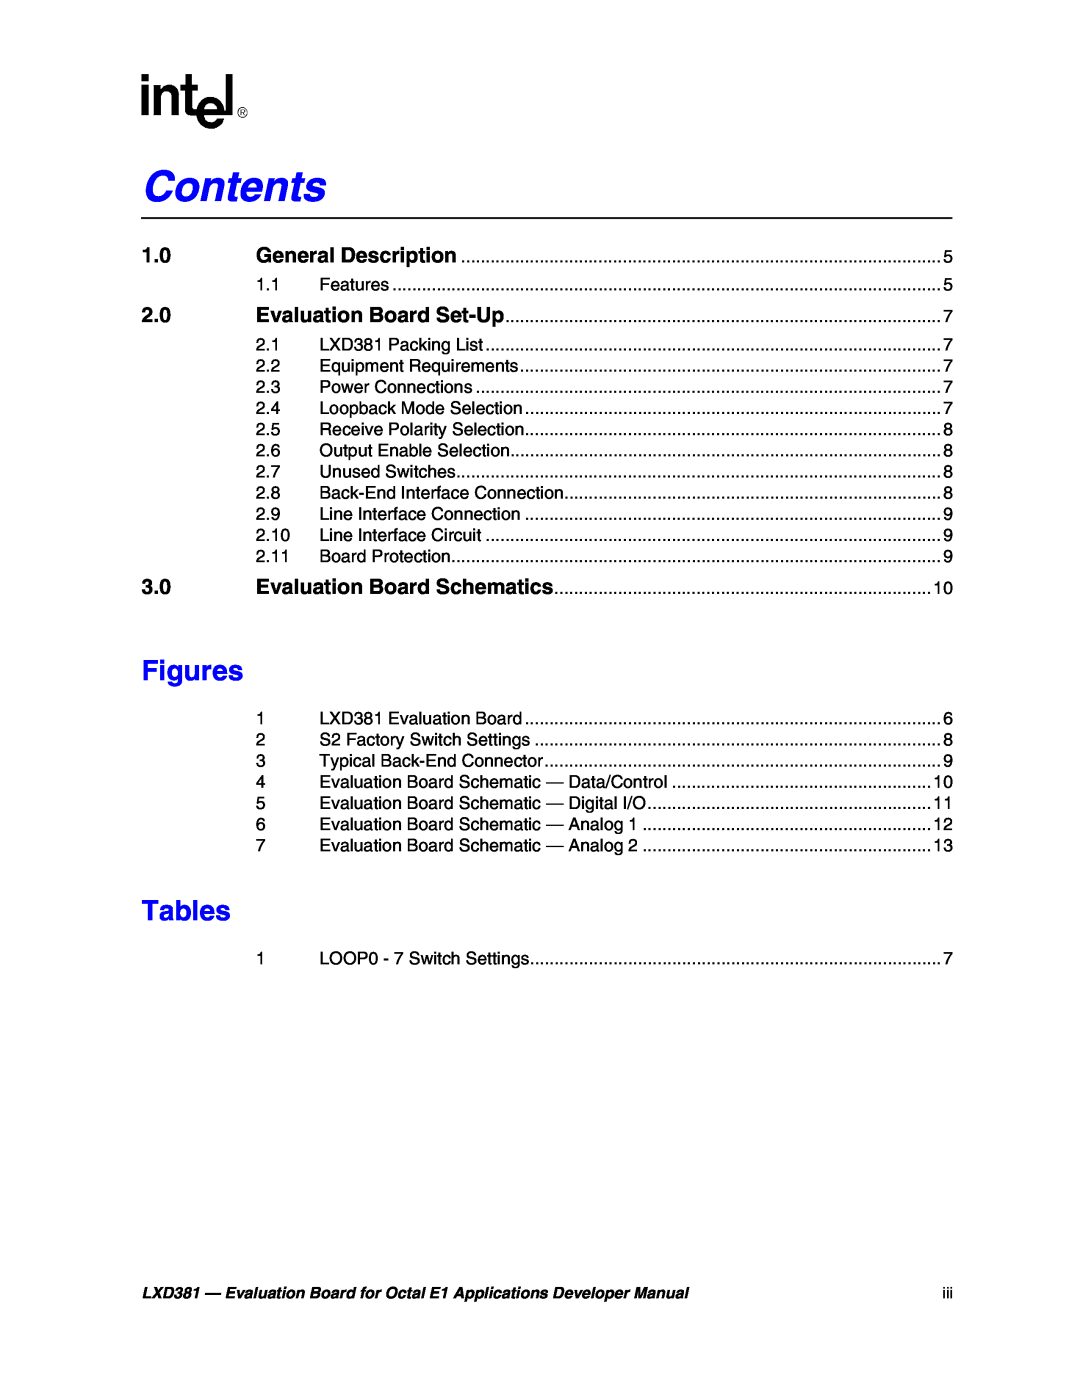 Intel LXD381 manual Figures, Tables, Contents 